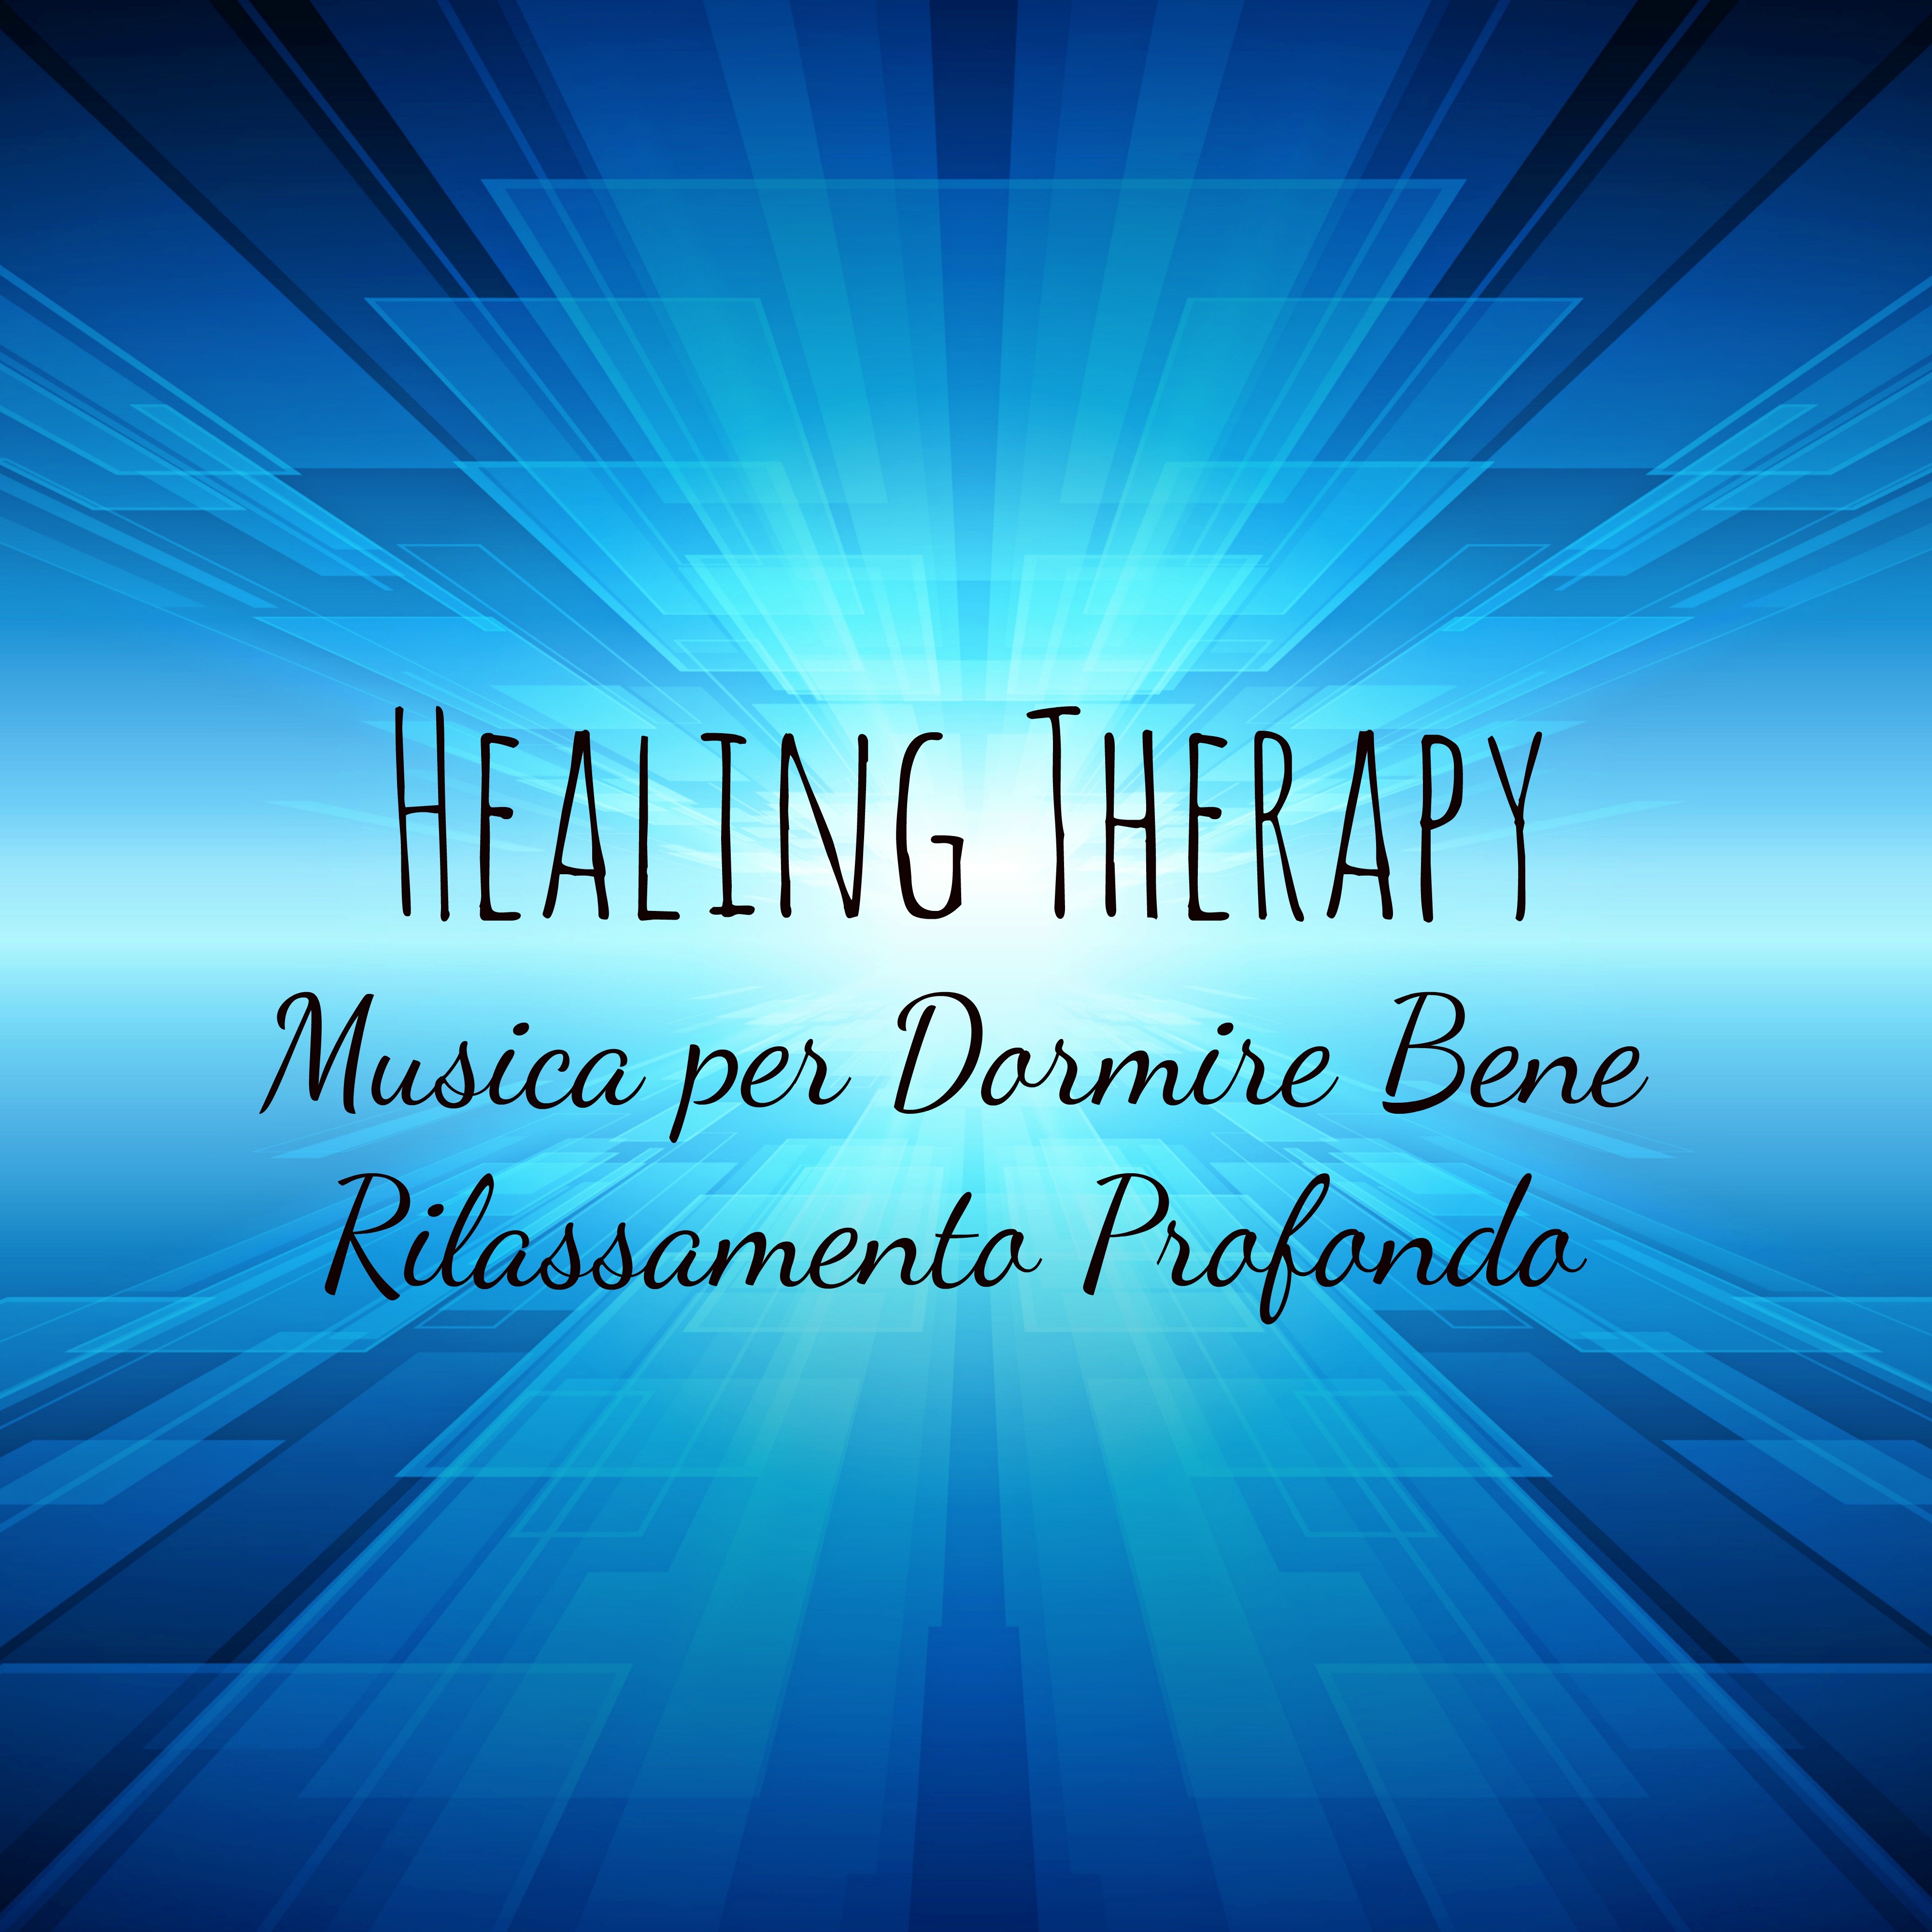 Healing Therapy - Musica per Dormire Bene Rilassamento Profondo con Suoni Terapeutici Dolci Strumentali New Age